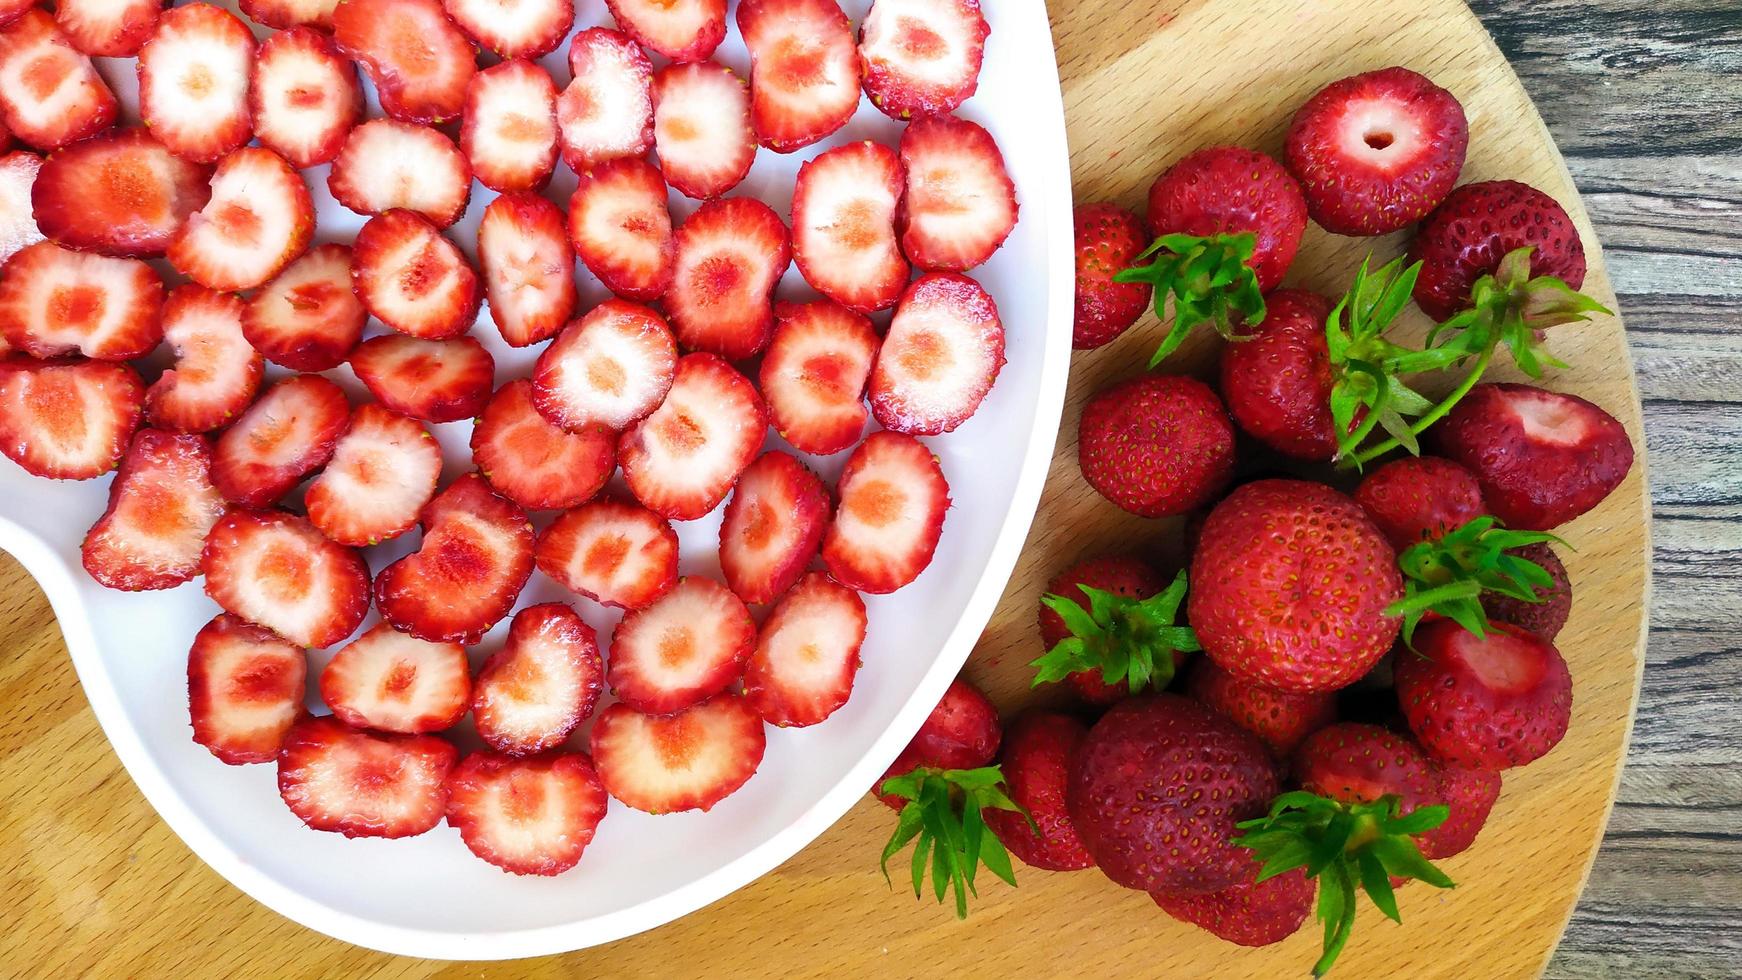 fraises dans une assiette blanche avec un coeur à côté de baies entières photo